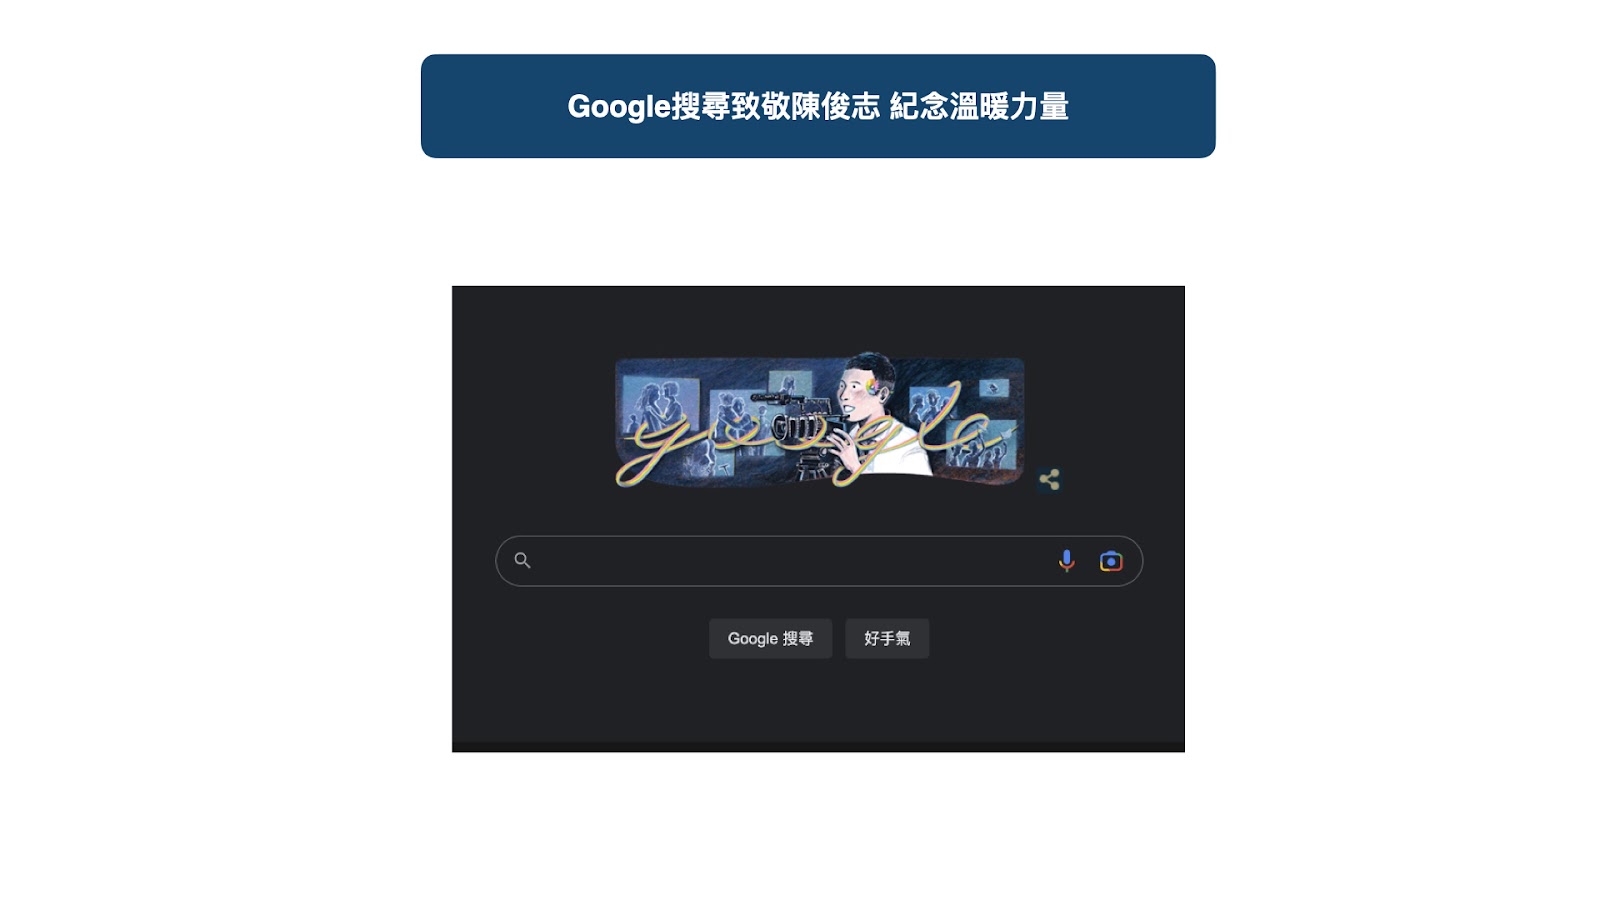 Google搜尋首頁致敬陳俊志 彩虹圍繞紀念溫暖力量